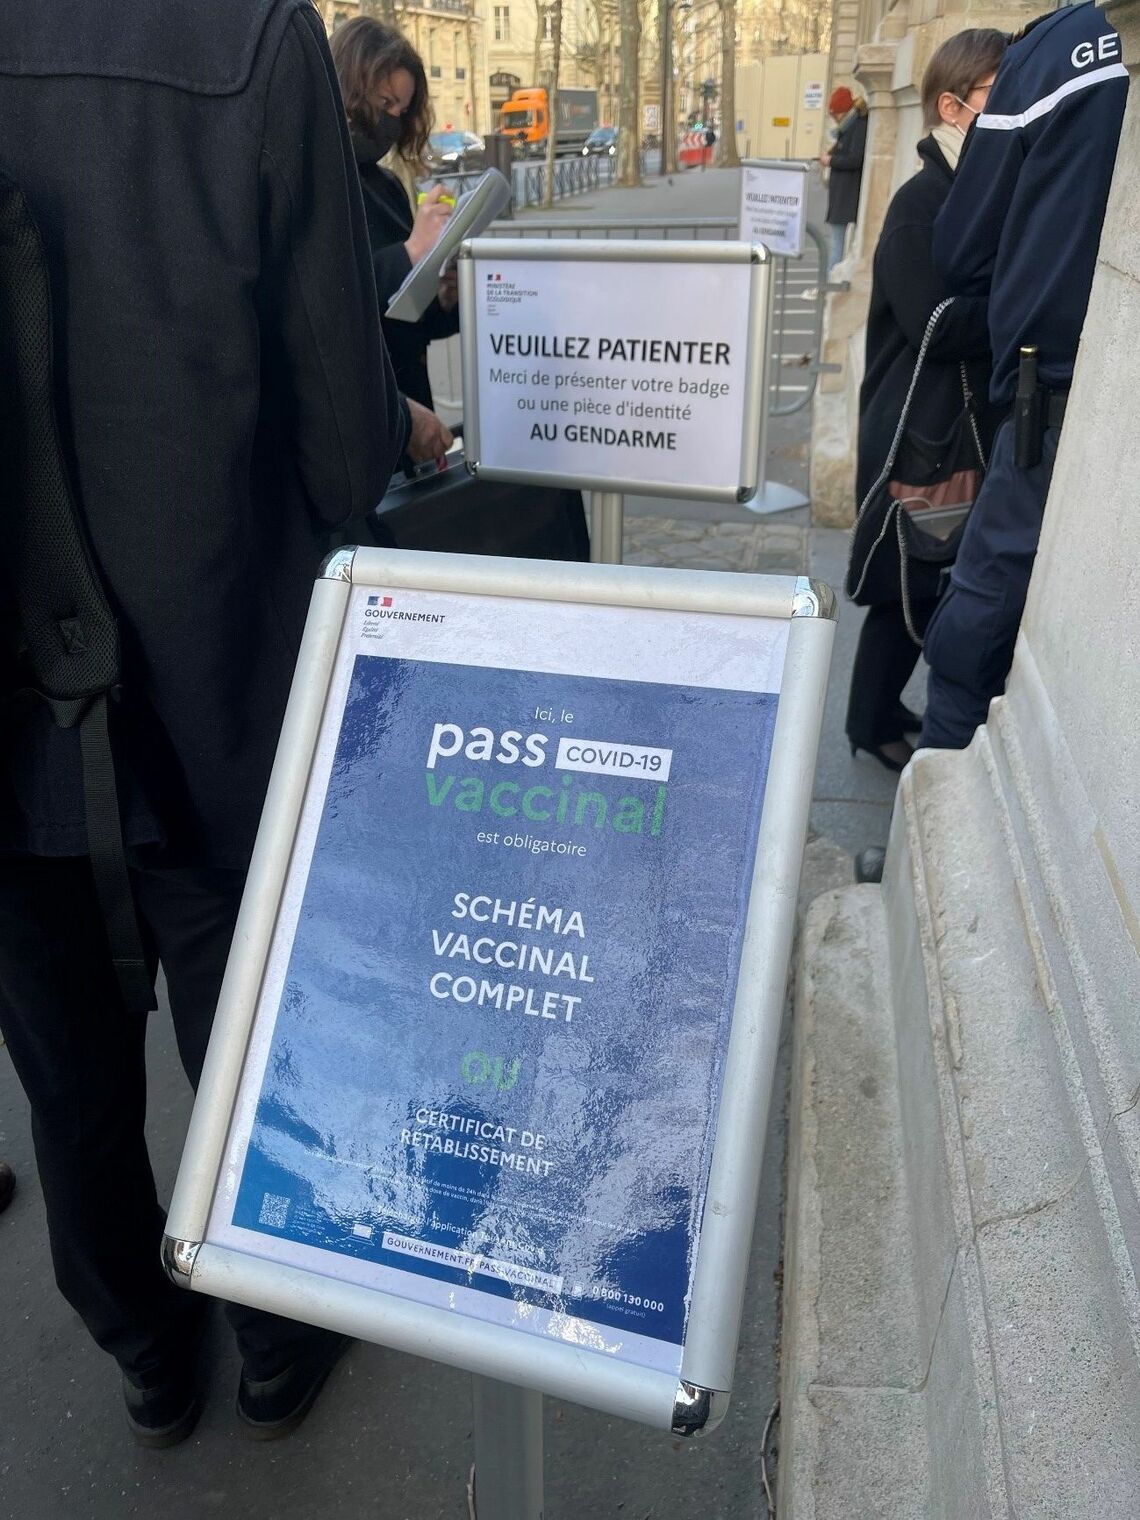 フランス政府建物やレストランなどに入る際には、スマホアプリ版「デジタル・ワクチンパスポート」の提示が必要（写真：2月23日、パリ市内で筆者撮影）